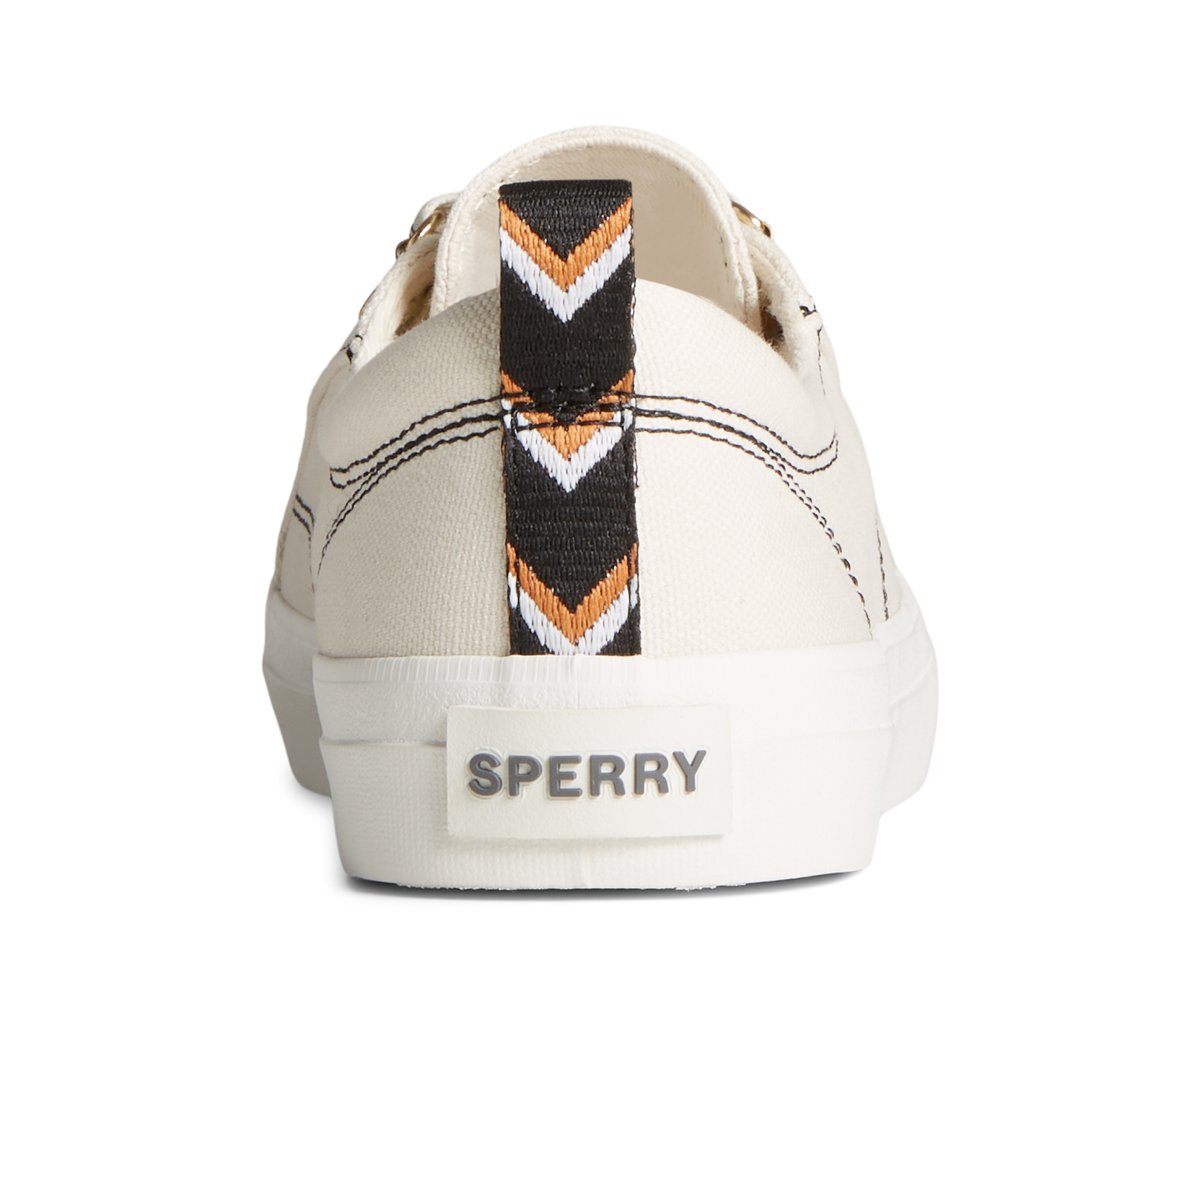 Crestvibesp_wm White Women's Sneakers | Sperry US